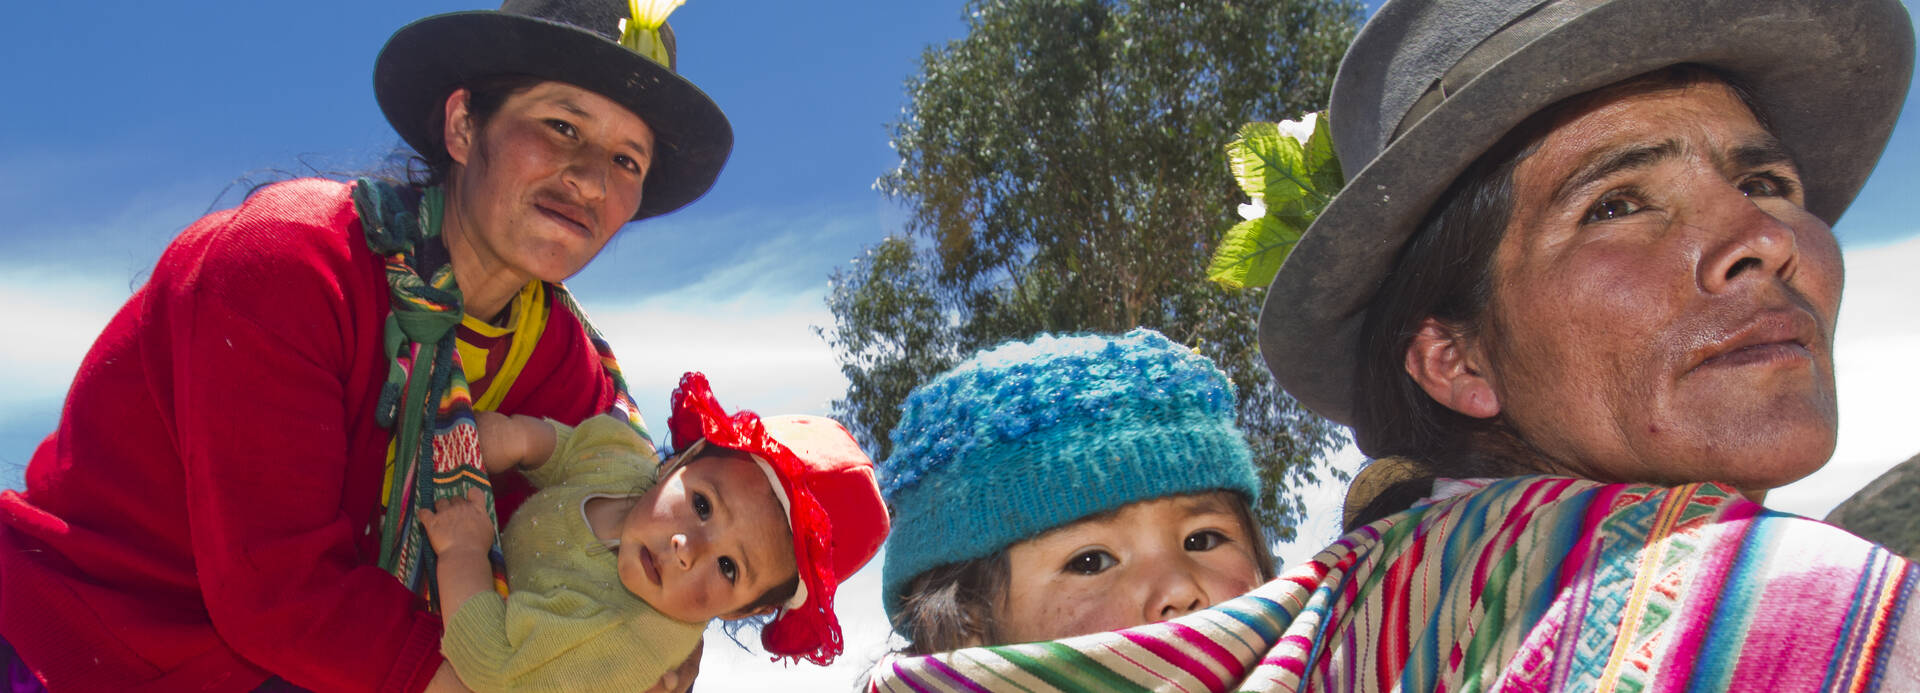 Frauen mit ihren Kinder in Peru.